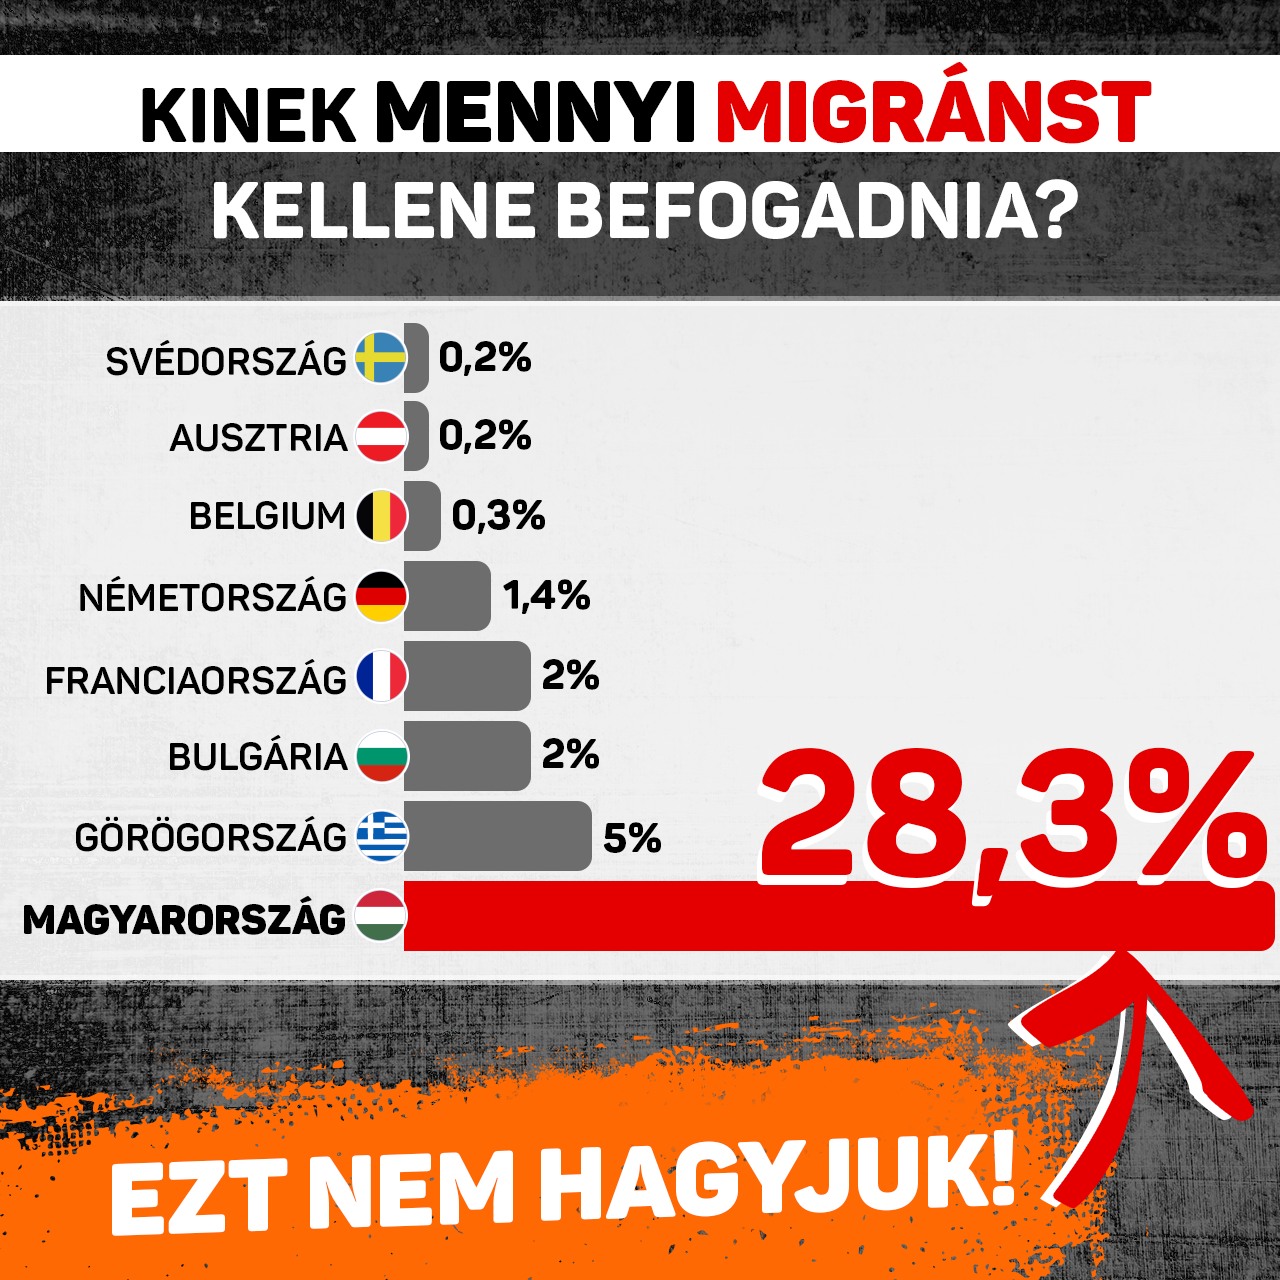 Brüsszel terve szerint az EU területére érkező migránsok 28,3 százalékának a menekültkérelmét Magyarországon kellene elbírálni, ami több mint 30 ezer migránst jelentene. Itt nem lesz Európa legnagyobb migránsgettója! Nem fogjuk hagyni, hogy ezt a tervet hazánkra kényszerítsék.